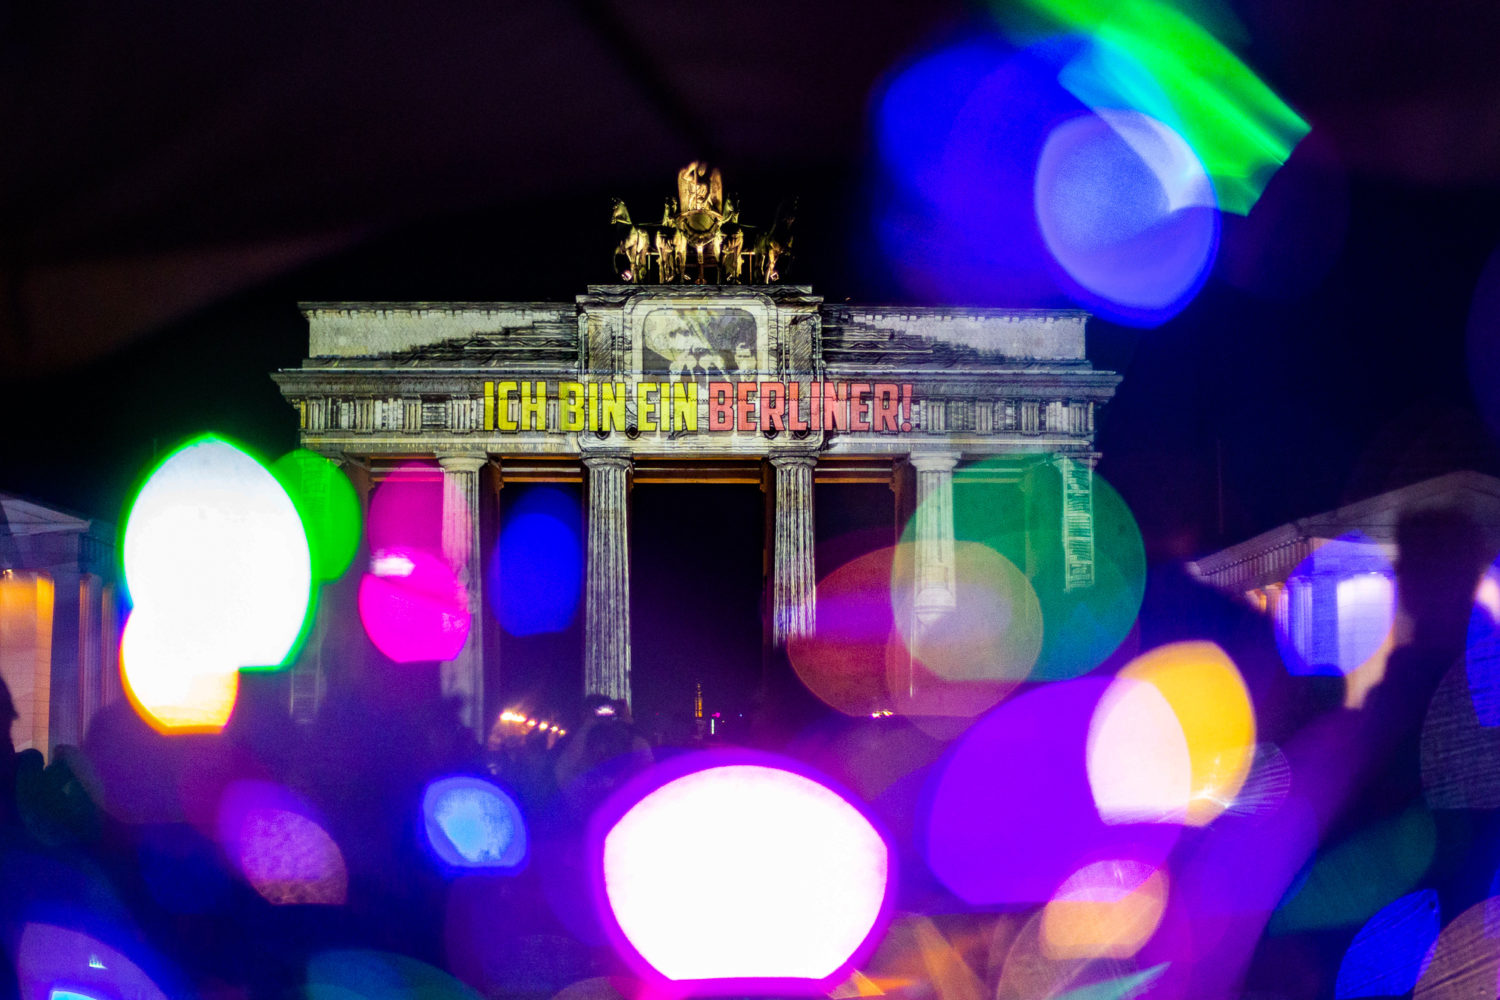 Ja, ein bisschen Kitsch muss auch sein. In poppigen Farben wurde JFKs legendäres Zitat "Ich bin ein Berliner" ans Brandenburger Tor projiziert. Foto: Imago/A. Friedrichs